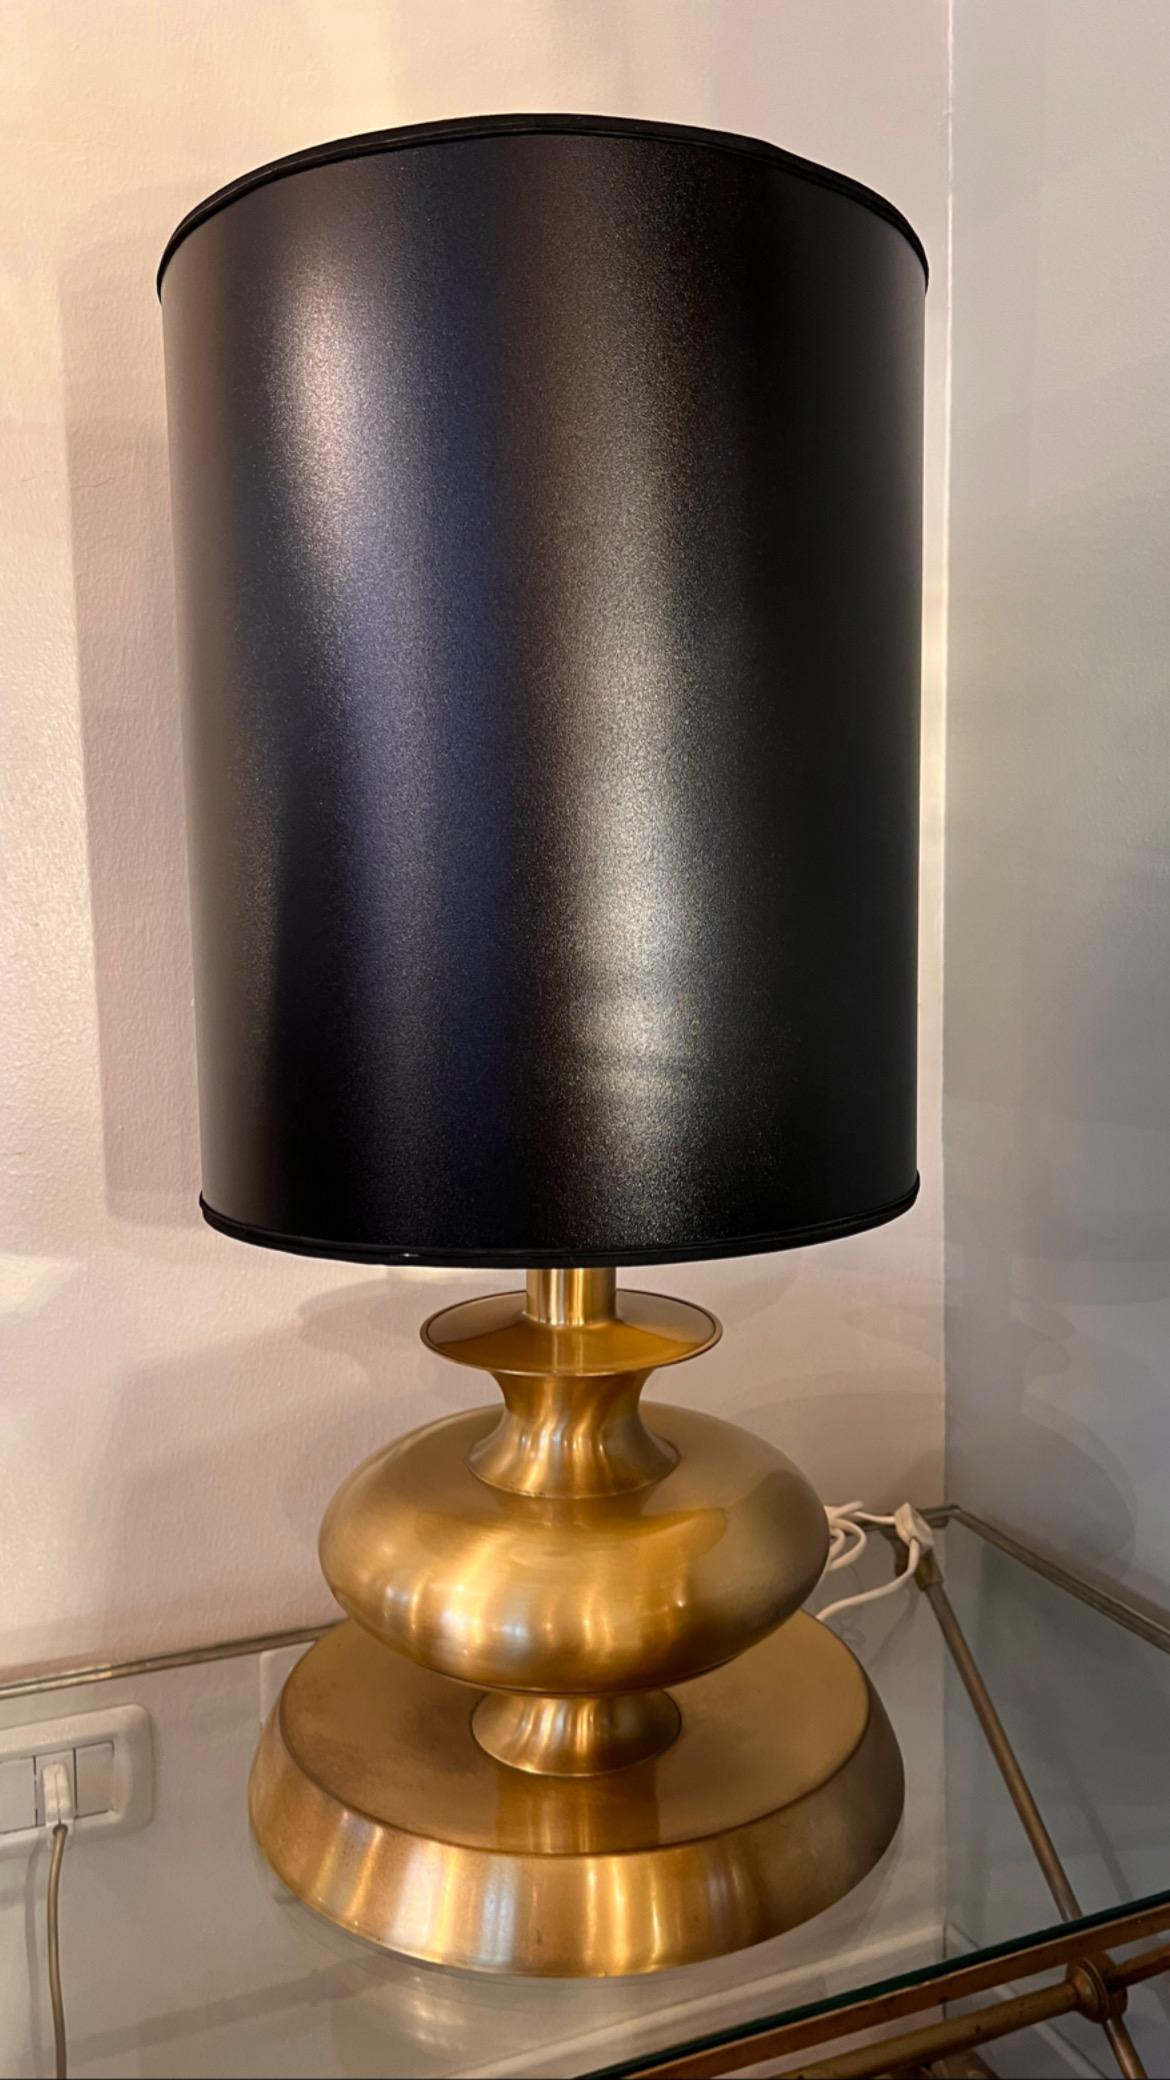 Lampe de table en laiton doré avec abat-jour cylindrique noir des années 70.

Dimensions : base 17 x 17 cm, hauteur avec abat-jour 85 cm